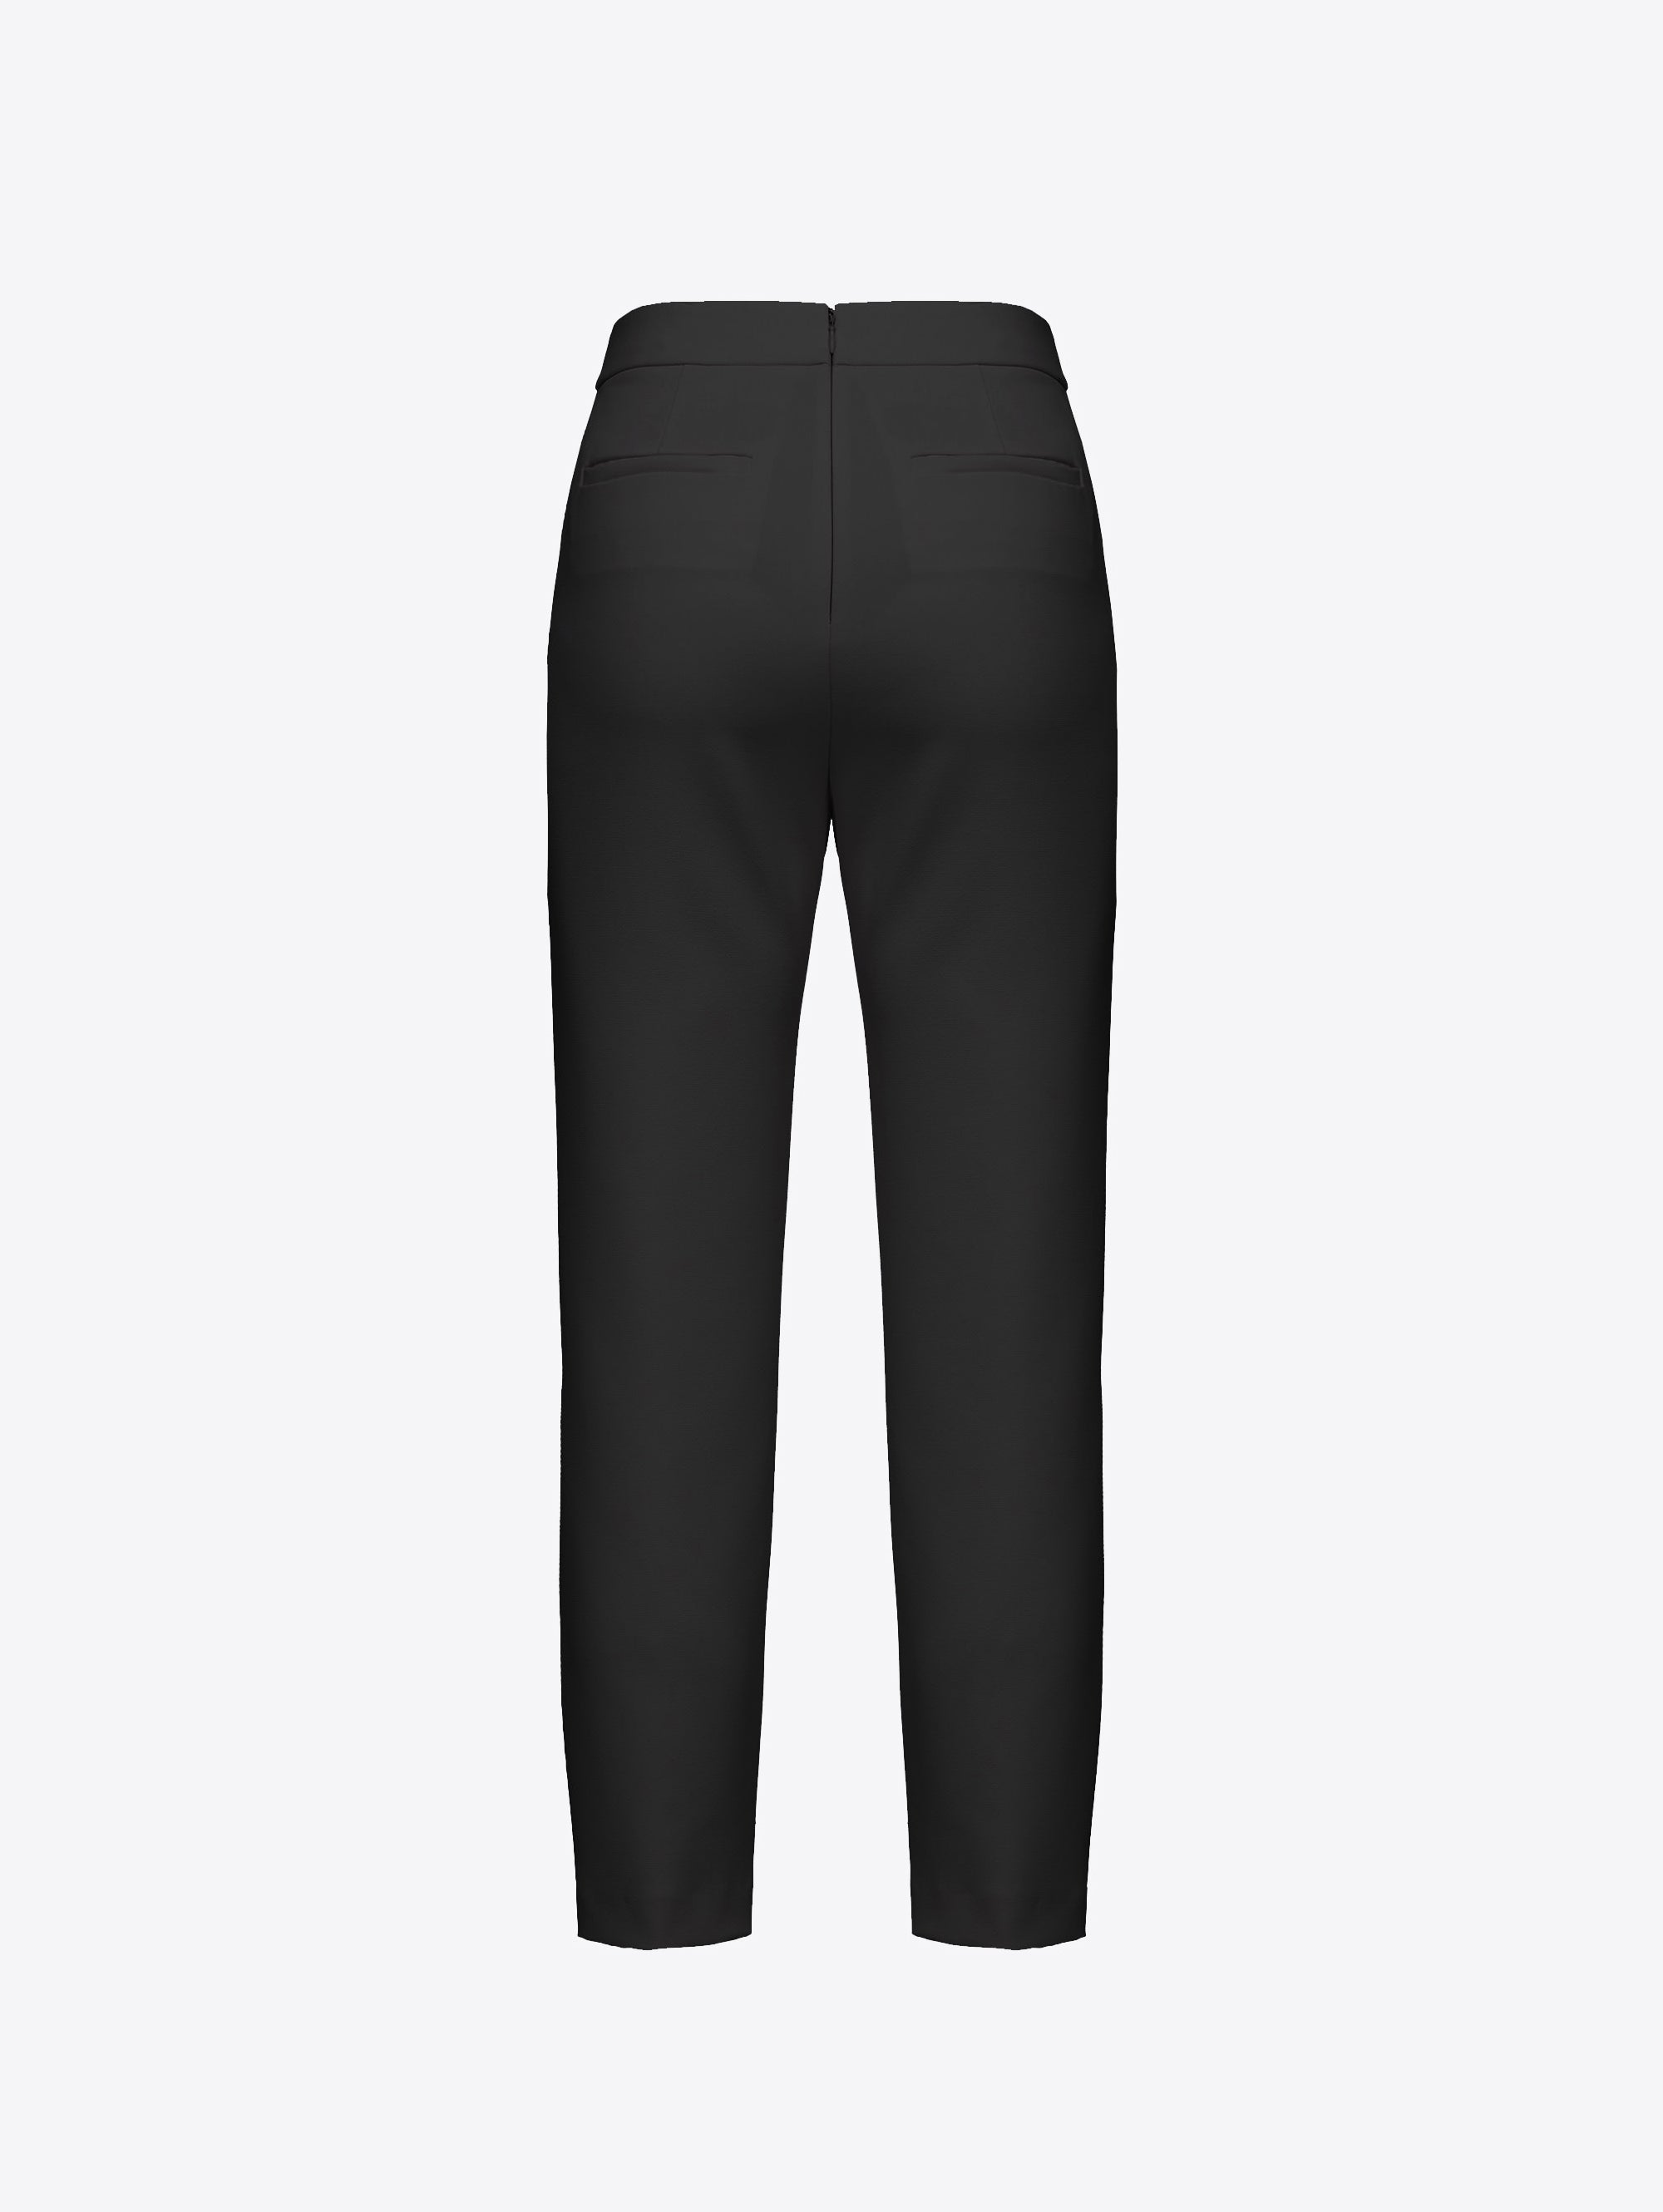 Slim Pants in Black Crêpe